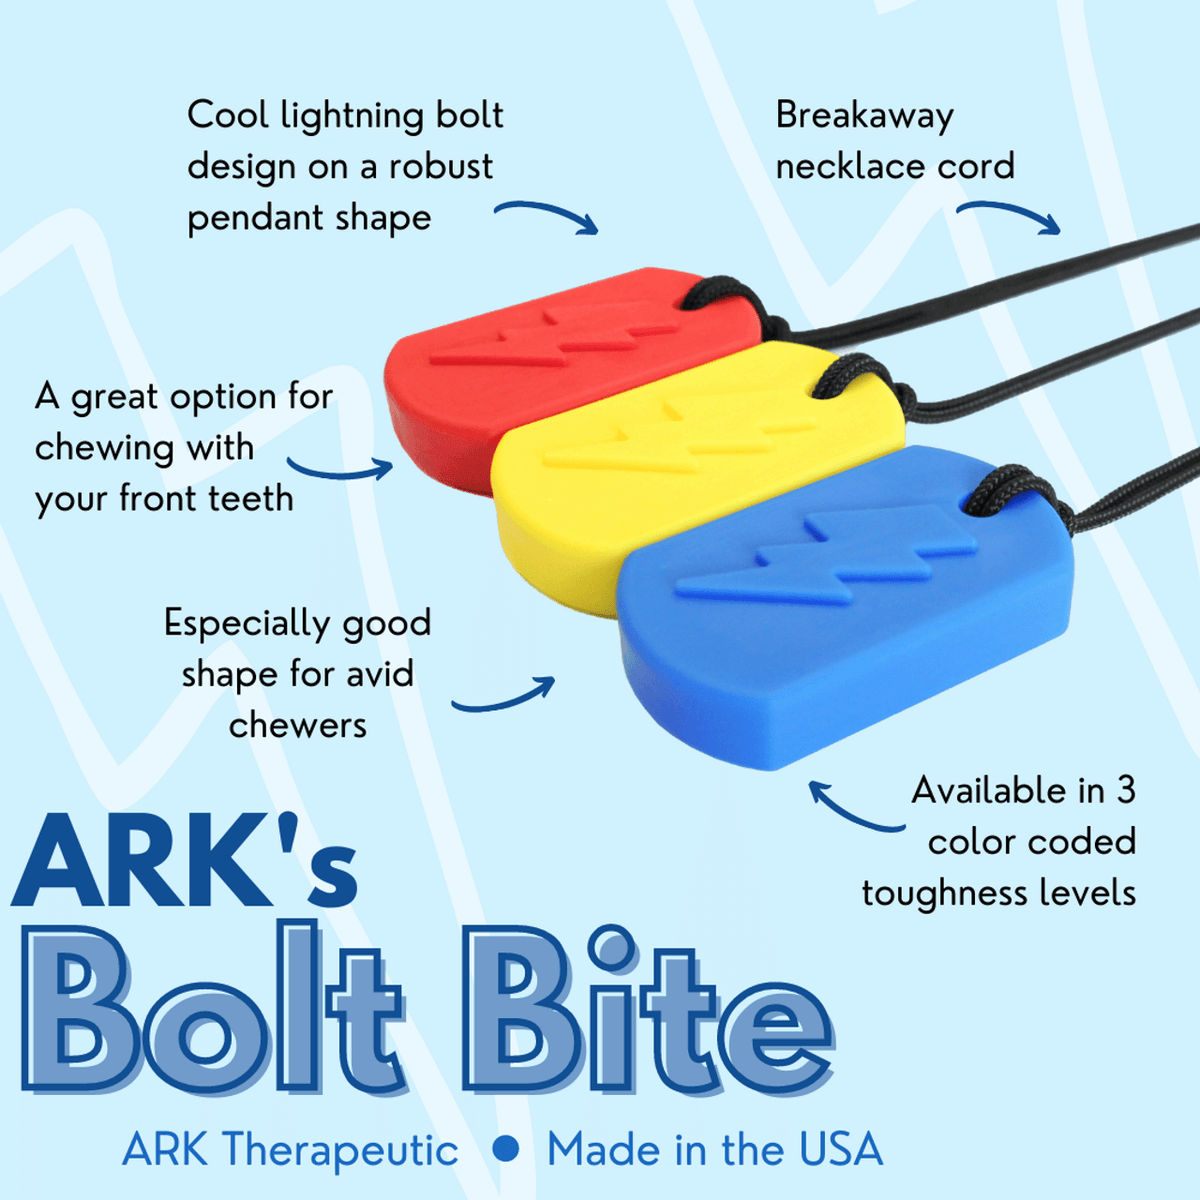 Bolt Bite Features